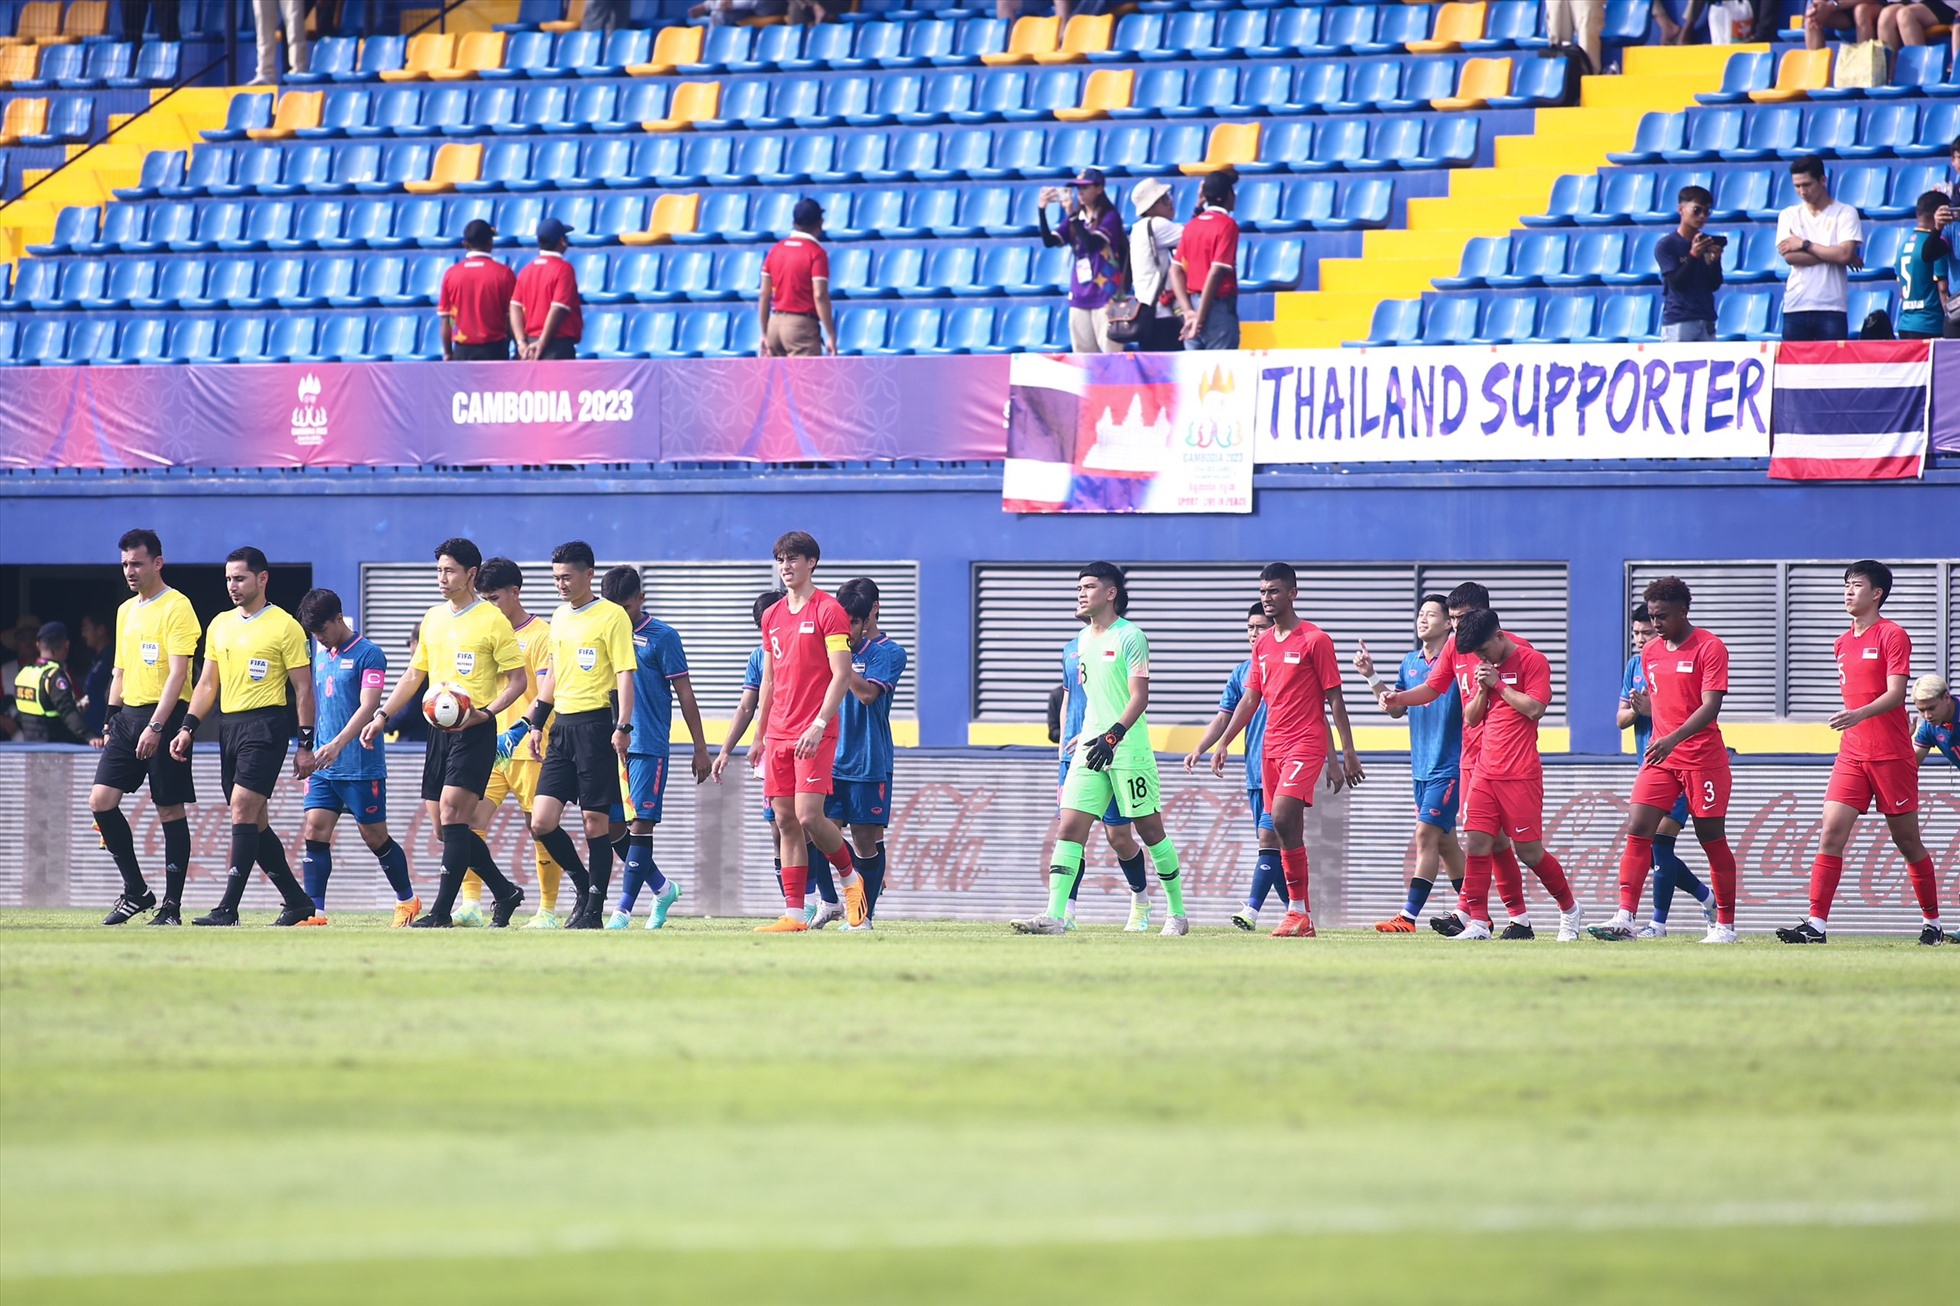 16h00: Trận đấu bắt đầu. U22 Thái Lan là đội giao bóng trước.